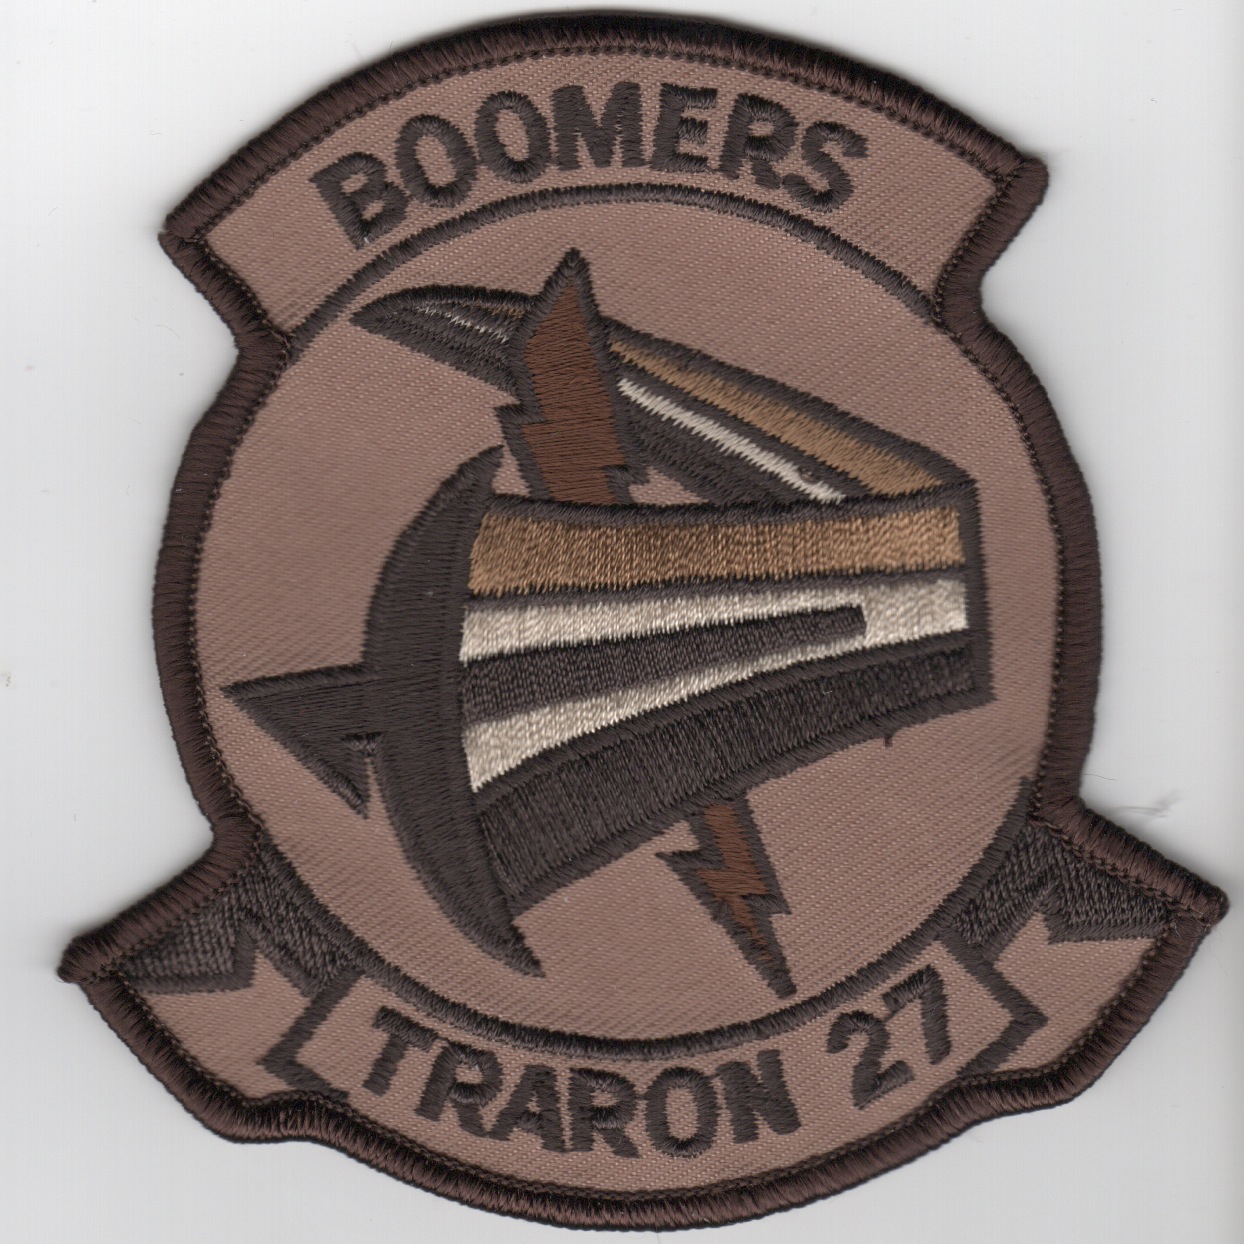 VT-27 'BOOMERS' Squadron Patch (Des)